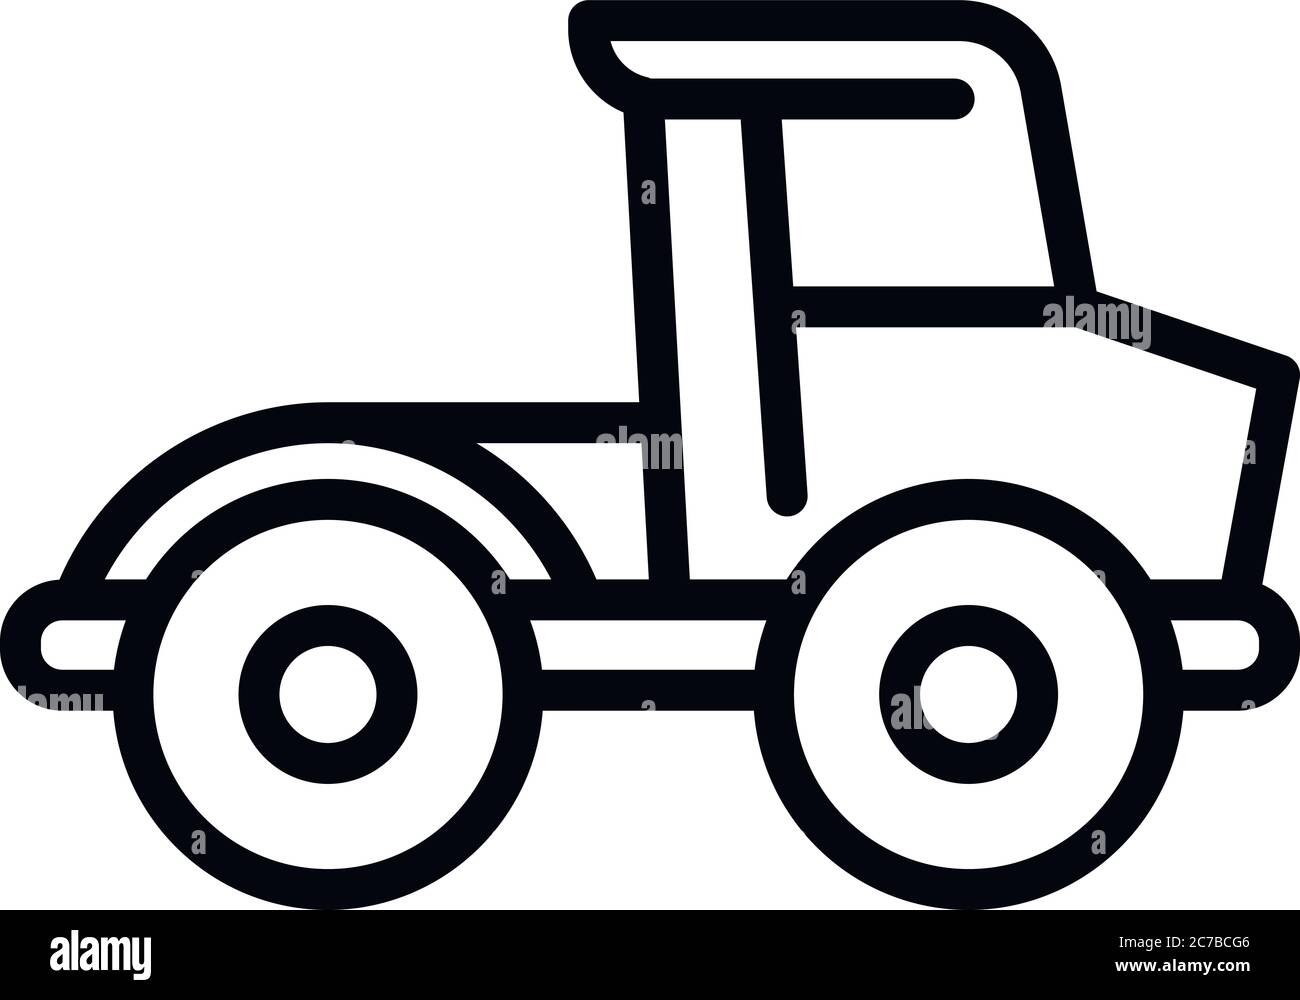 Icône bulldozer agricole. Tracer les contours de l'icône vectorielle de bulldozer agricole pour la conception de sites Web isolés sur fond blanc Illustration de Vecteur